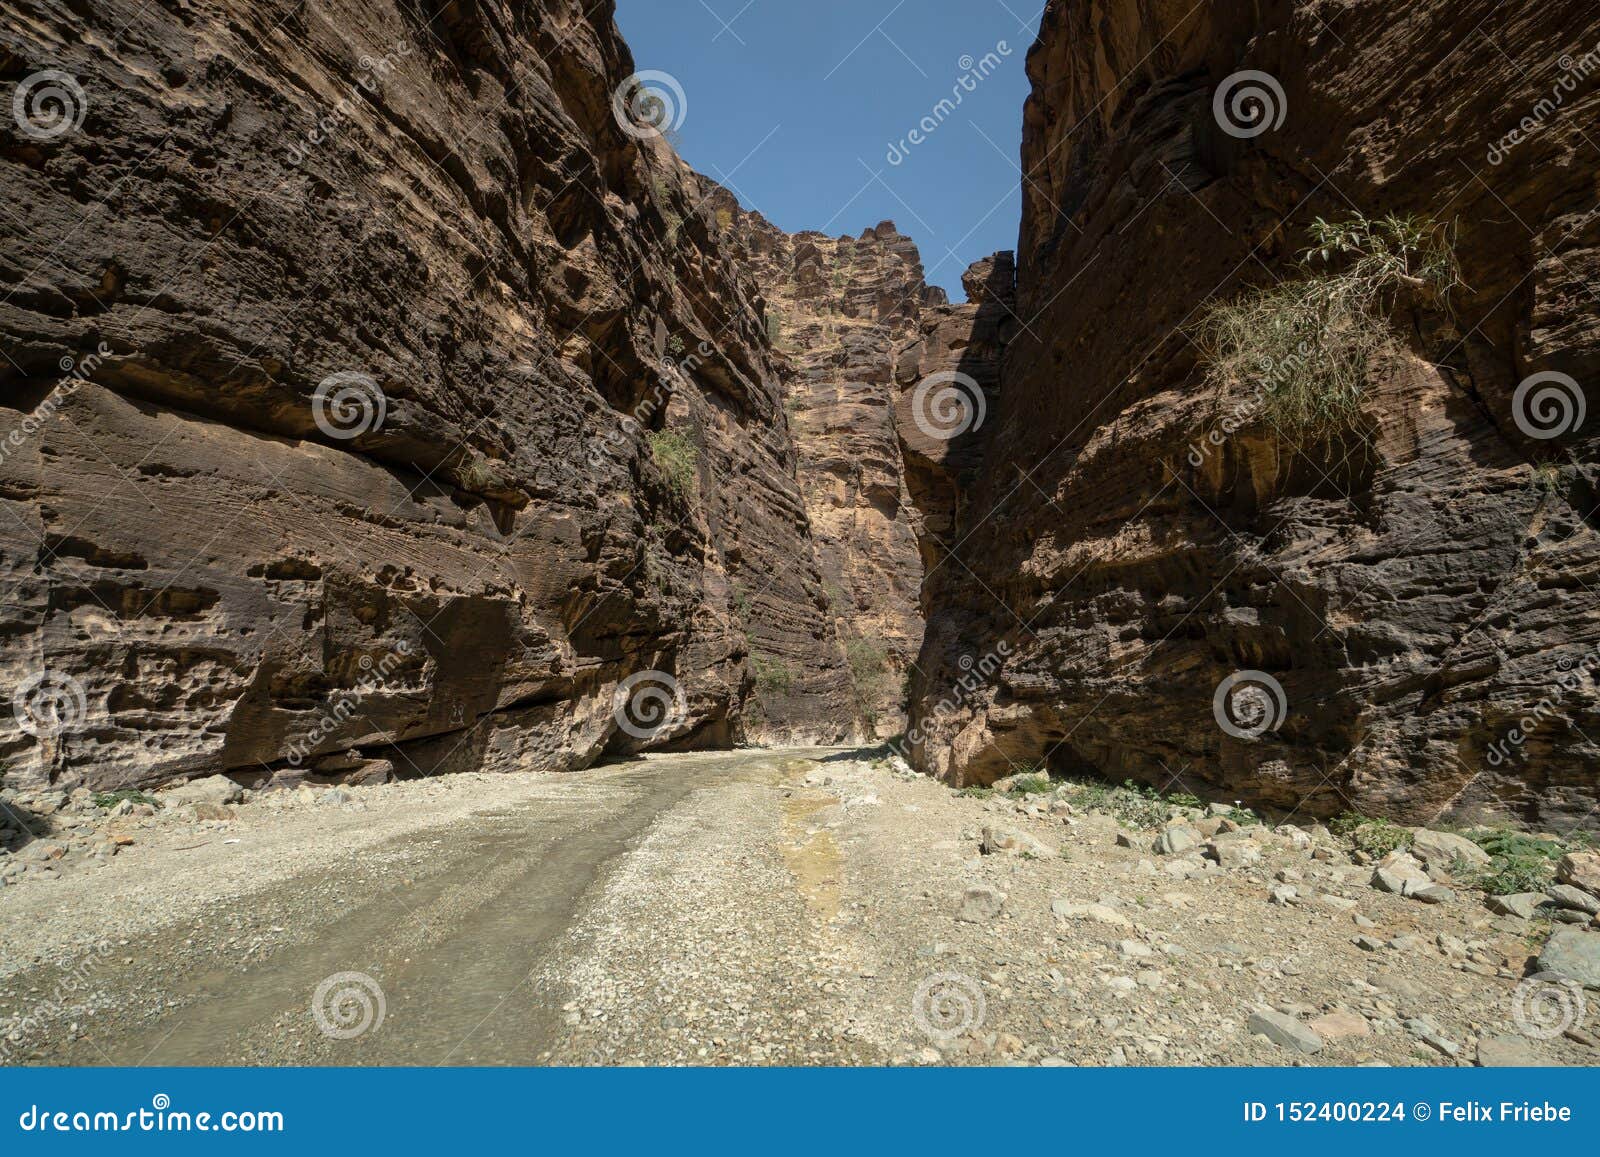 entrance to wadi lajab in jizan province, saudi arabia